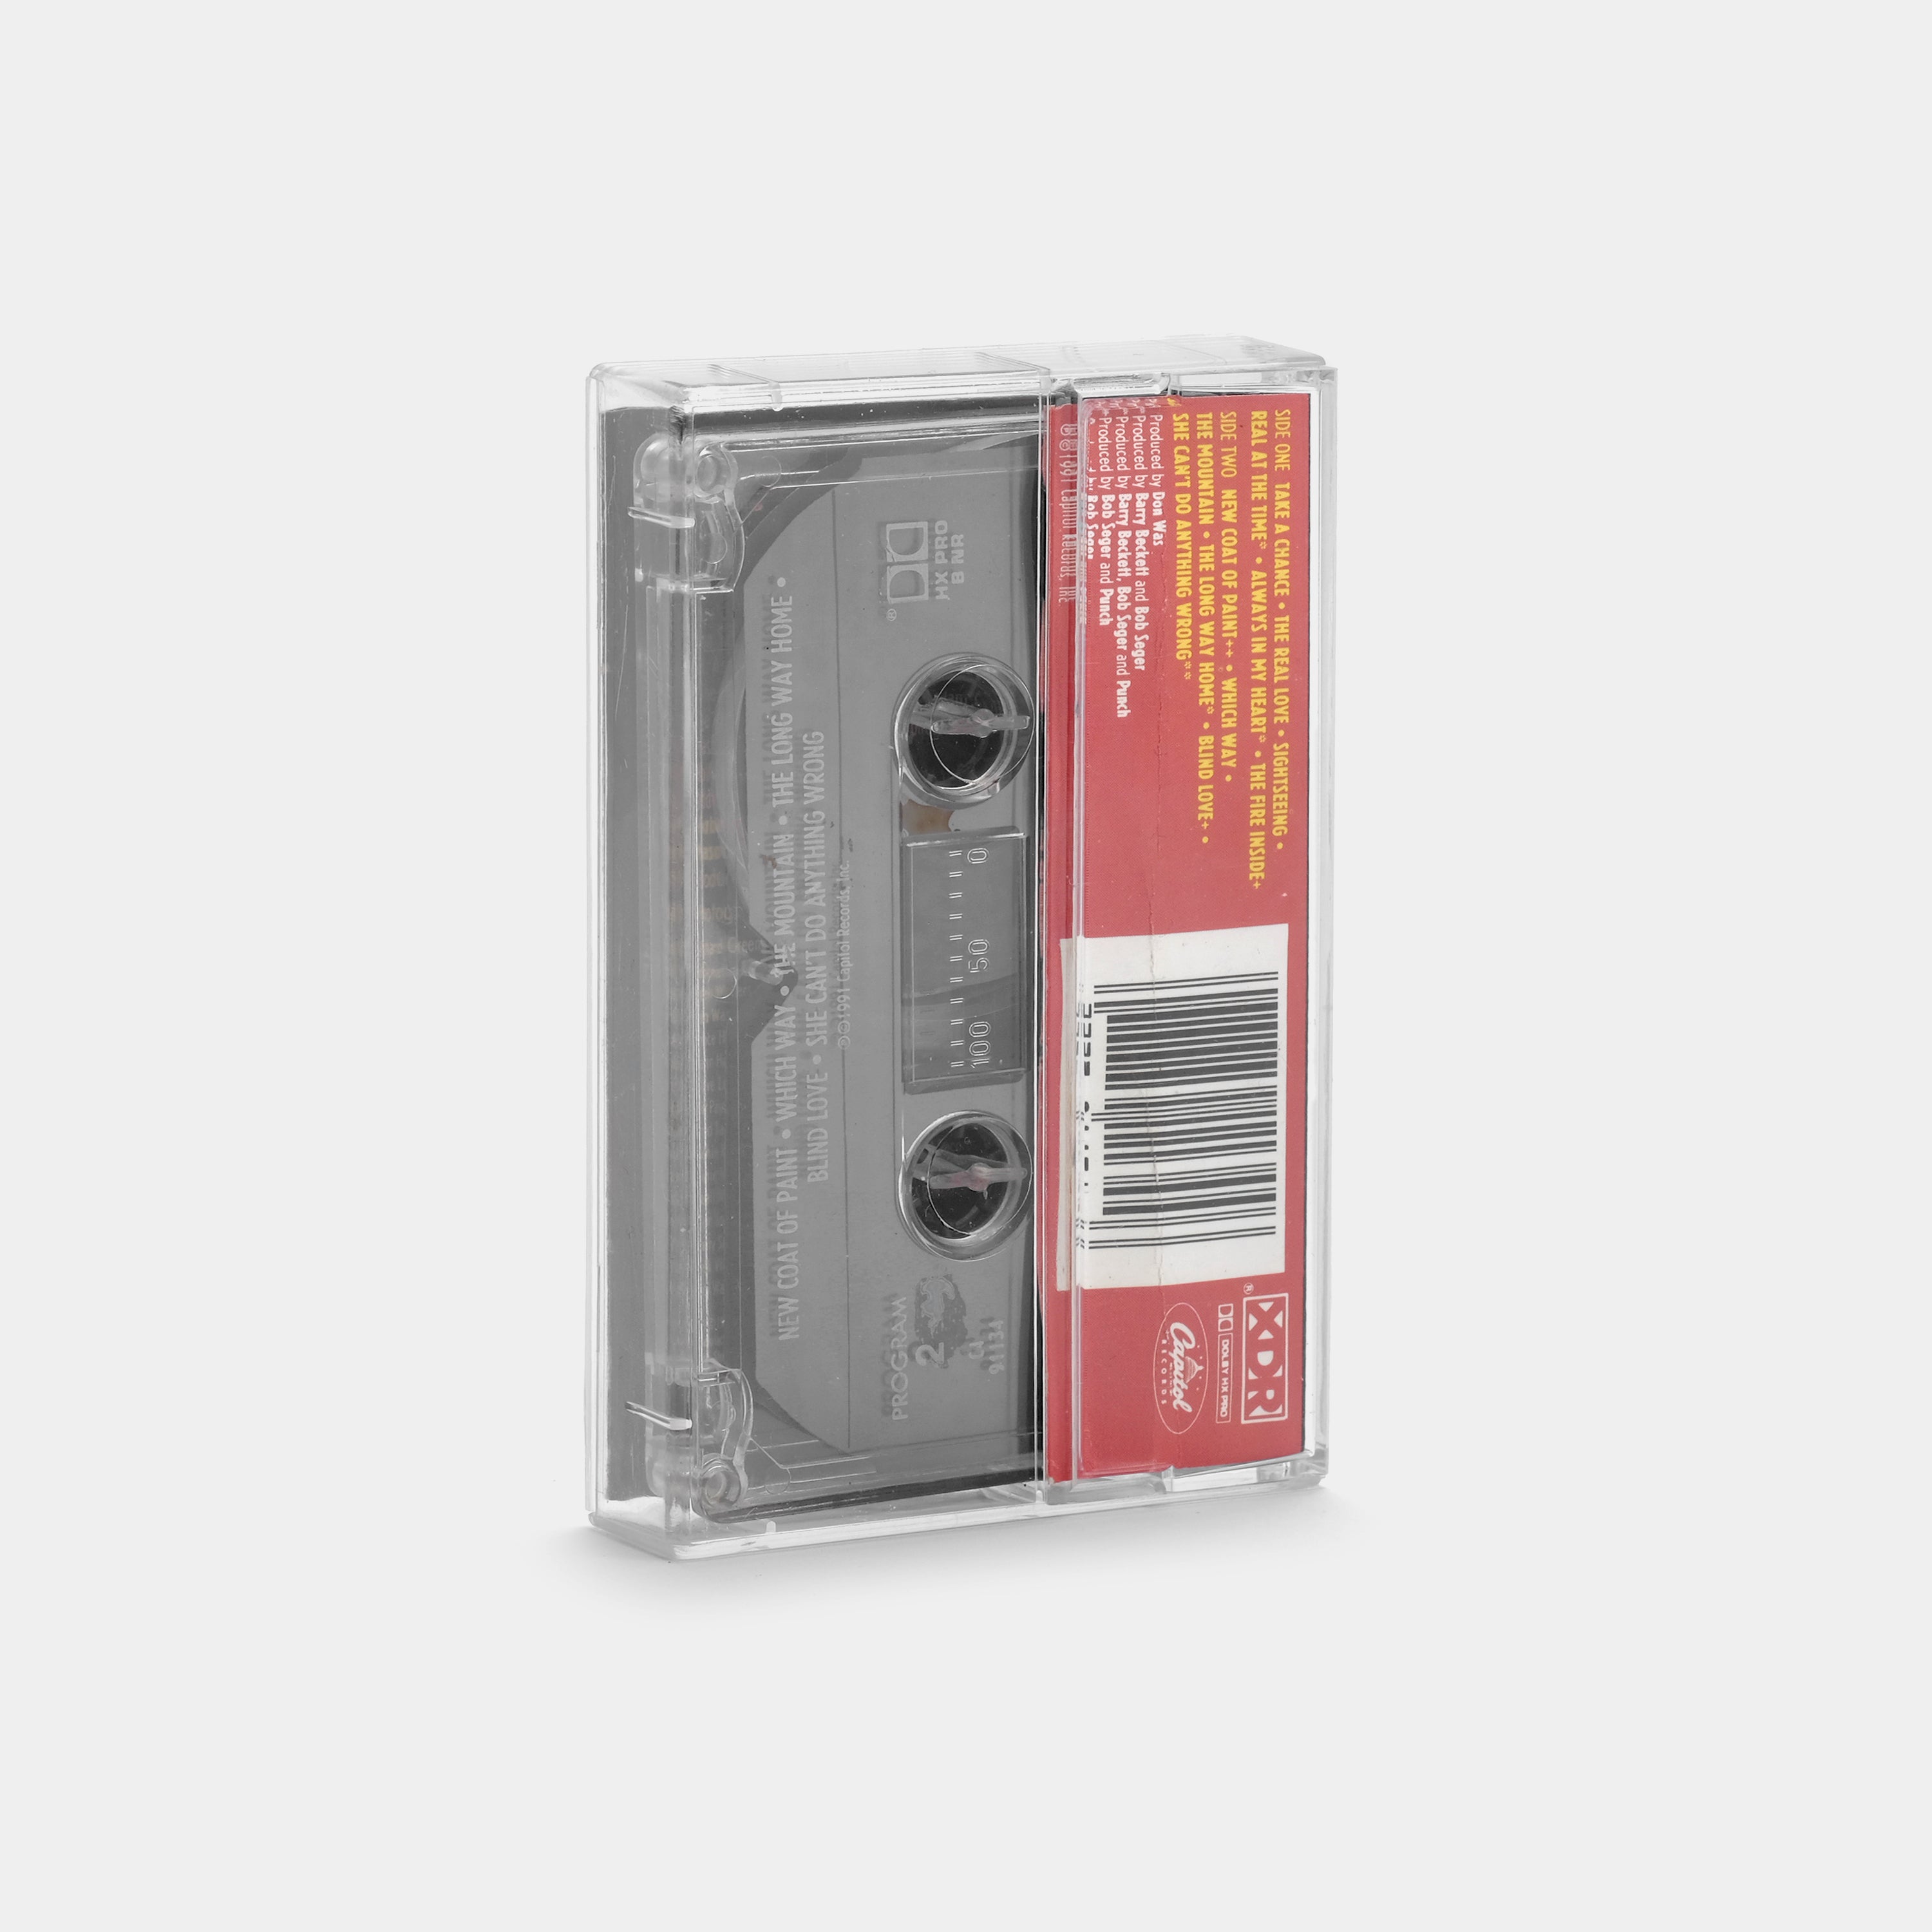 Bob Seger & The Silver Bullet Band - The Fire Inside Cassette Tape